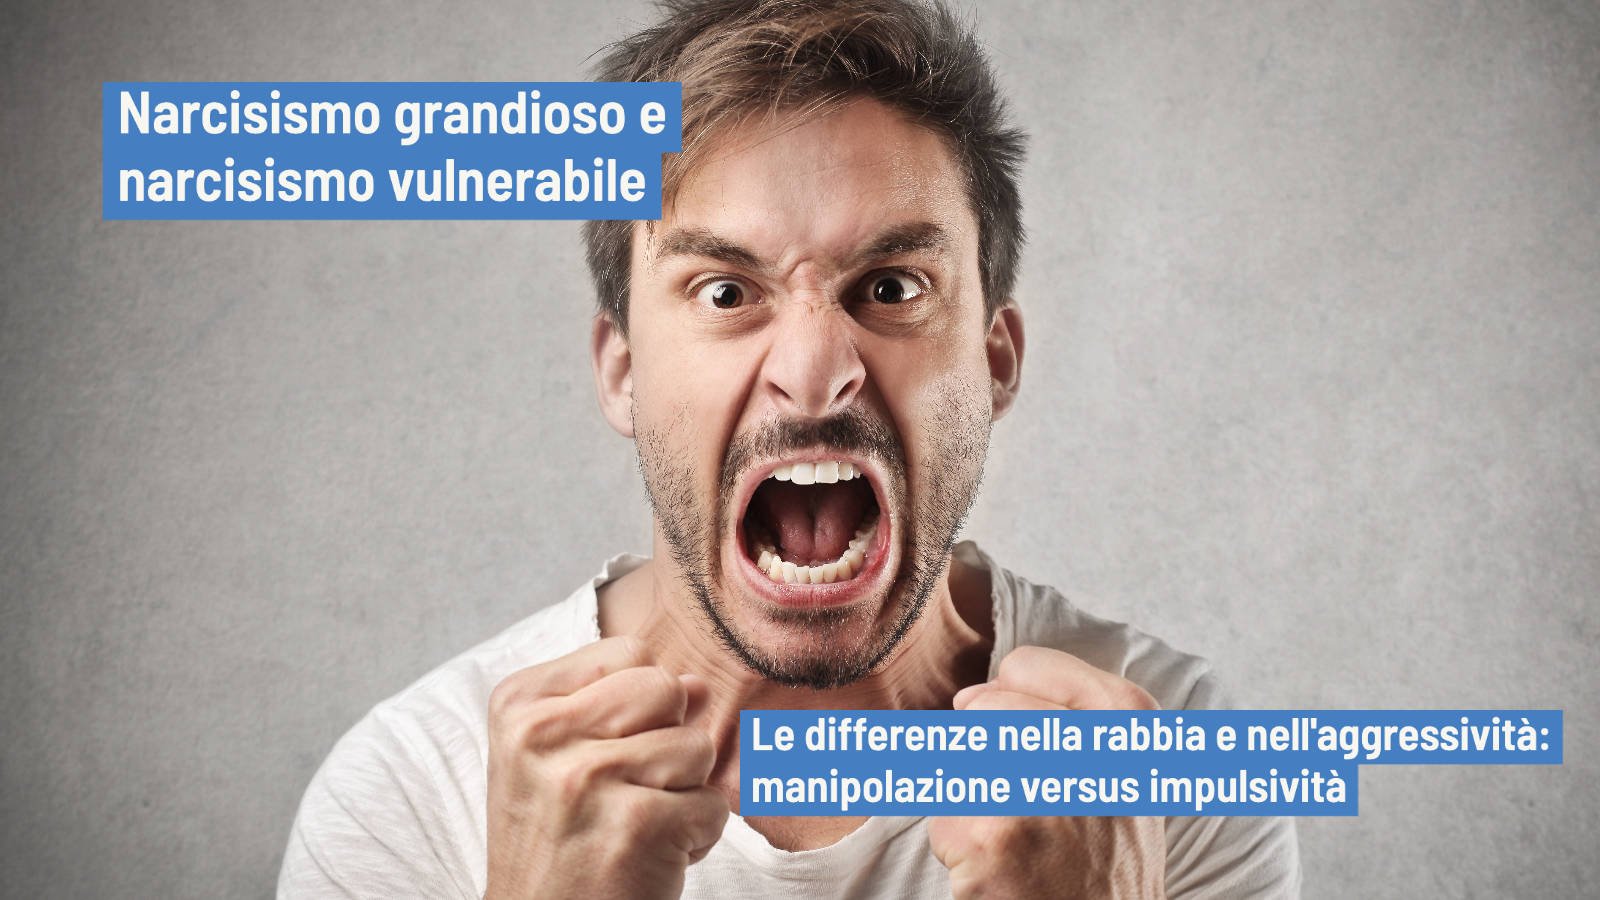 Narcisismo grandioso e vulnerabile: il ruolo di rabbia e aggressività